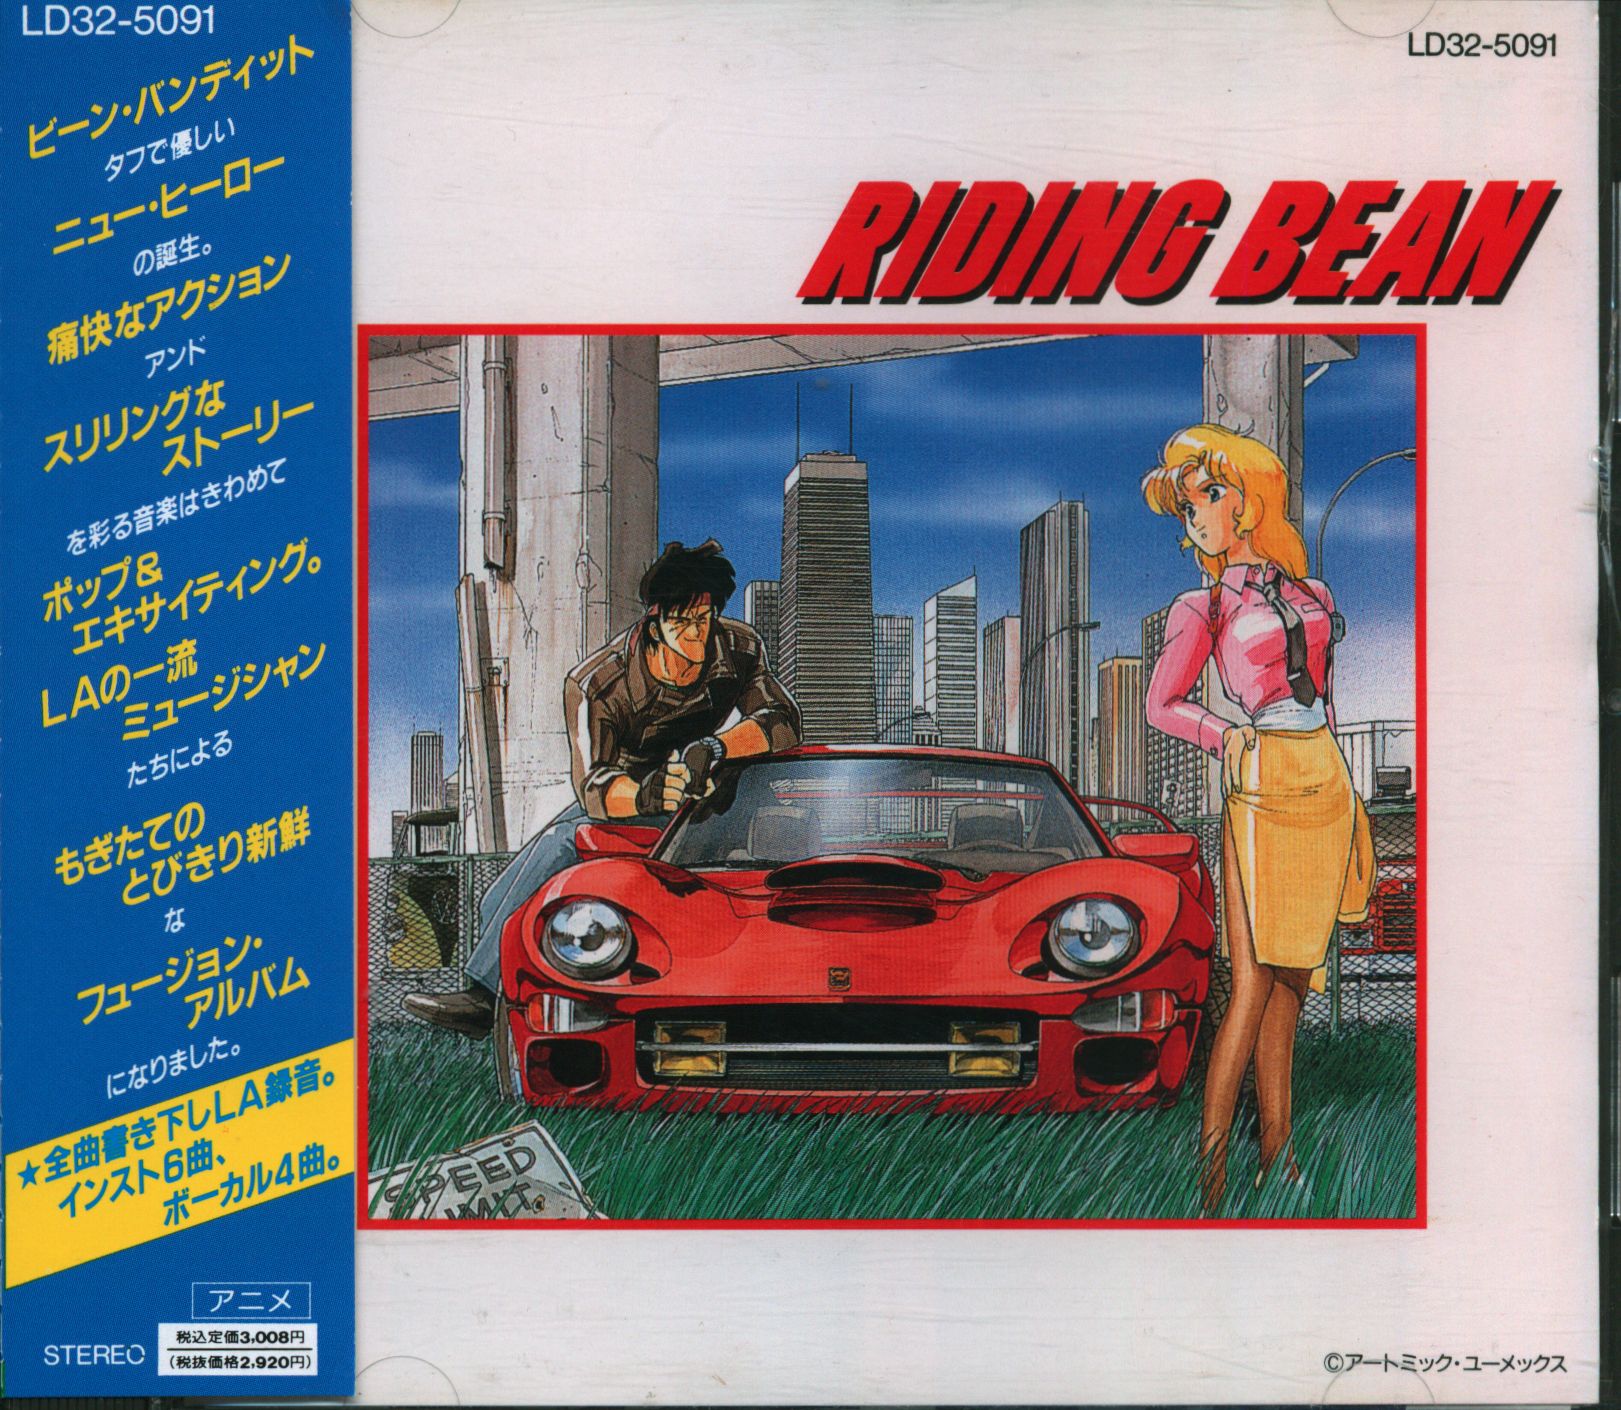 Riding Bean The Movie - Brand New Anime DVD by AnimEigo 737187003967 | eBay